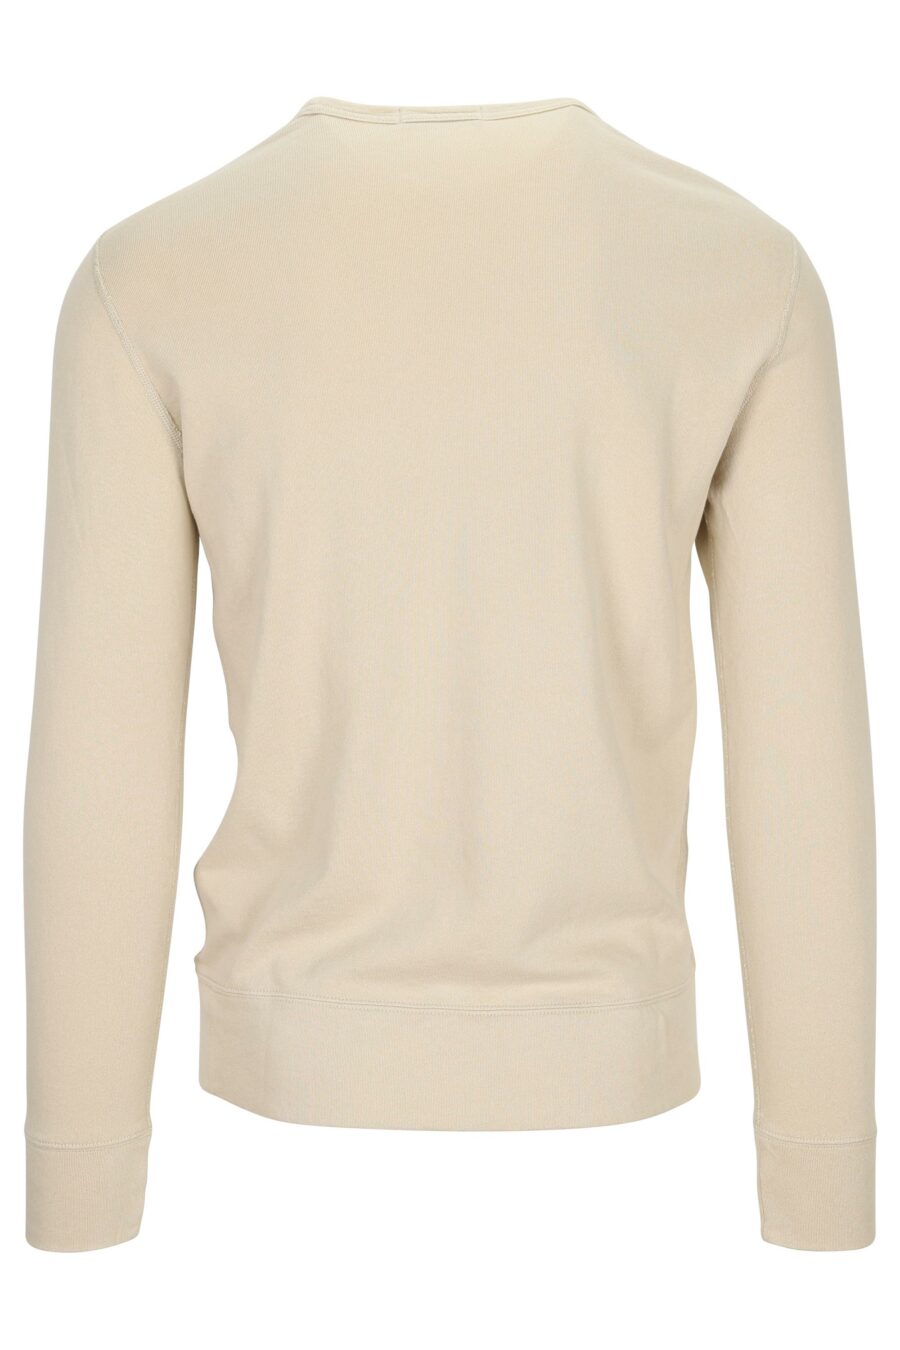 Beige sweatshirt with mini-logo "polo" - 3616535913264 1